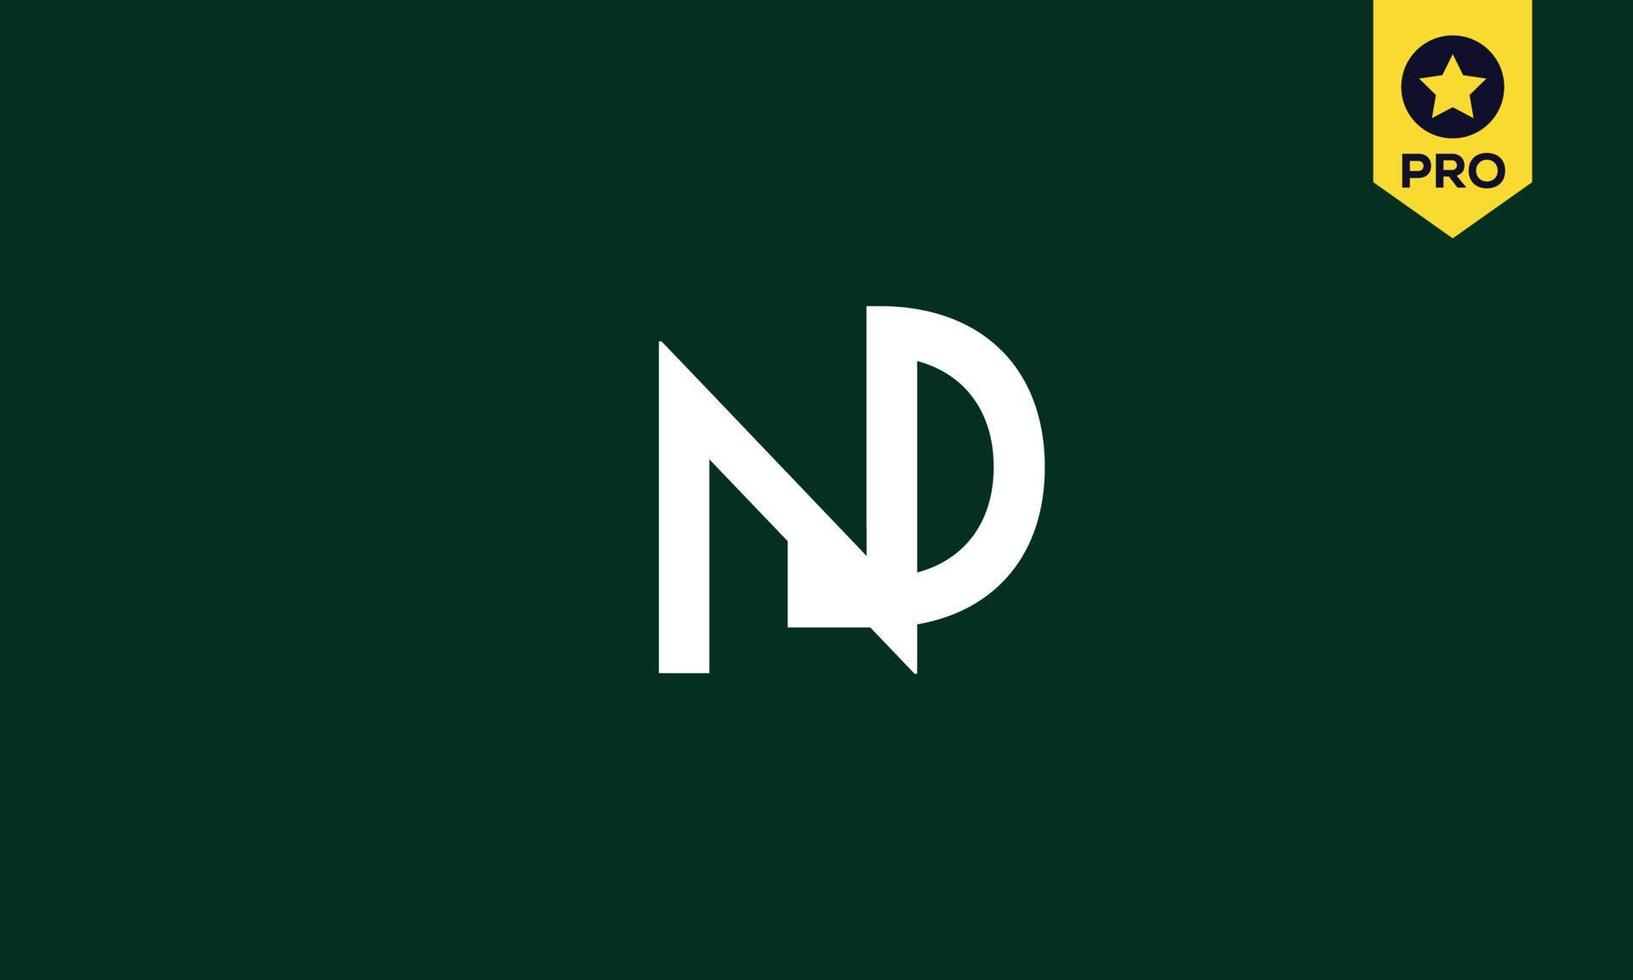 letras do alfabeto iniciais monograma logotipo nd, dn, n e d vetor